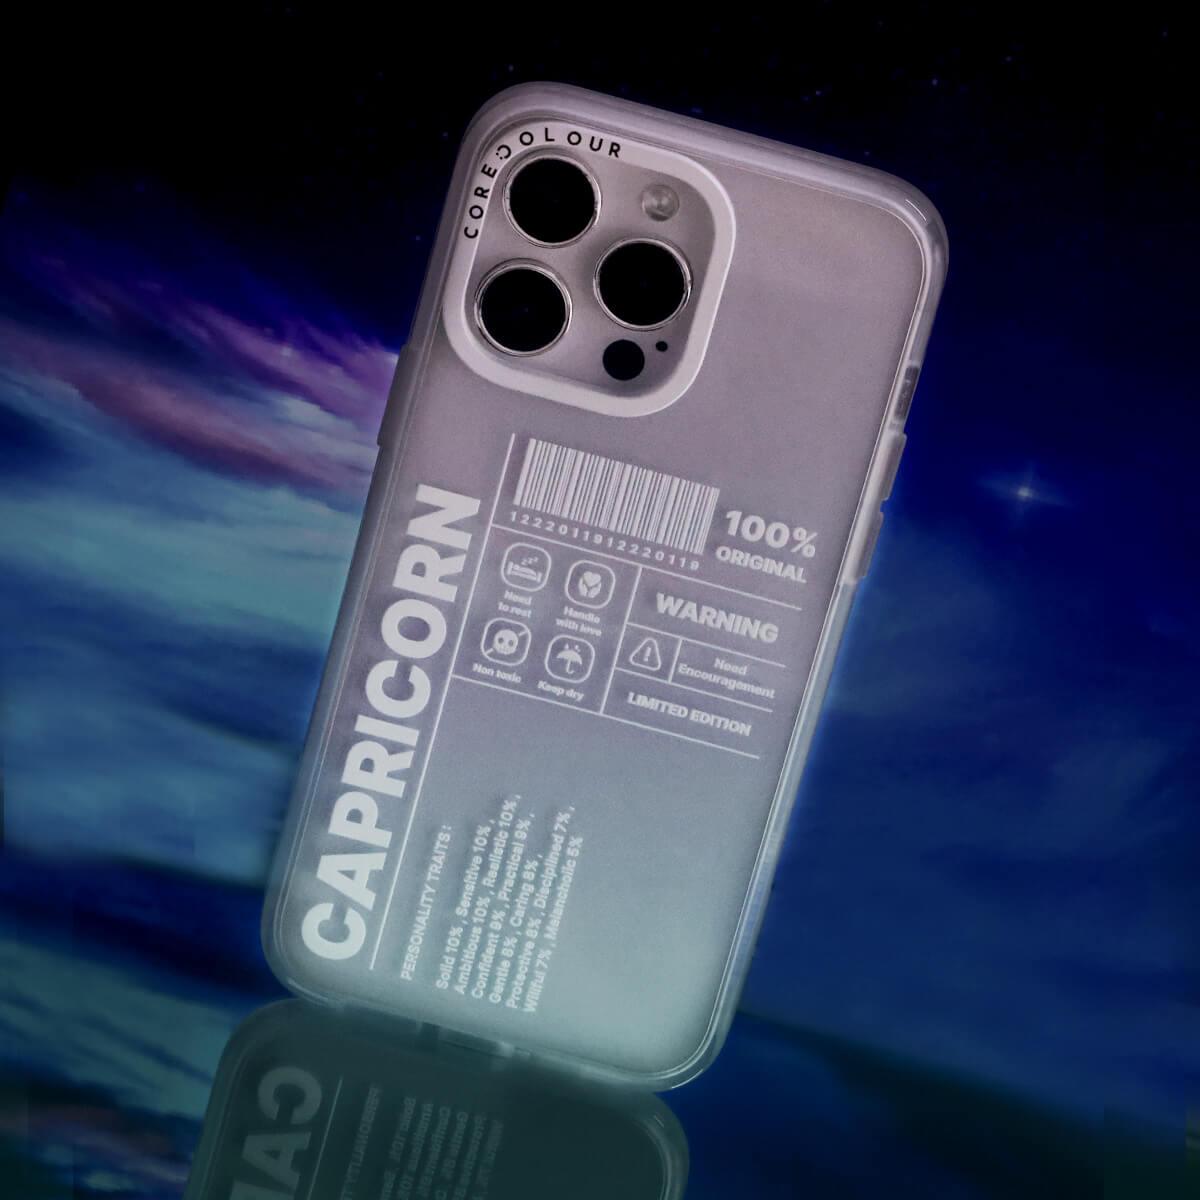 iPhone 12 Pro Max Warning Capricorn Phone Case - CORECOLOUR AU